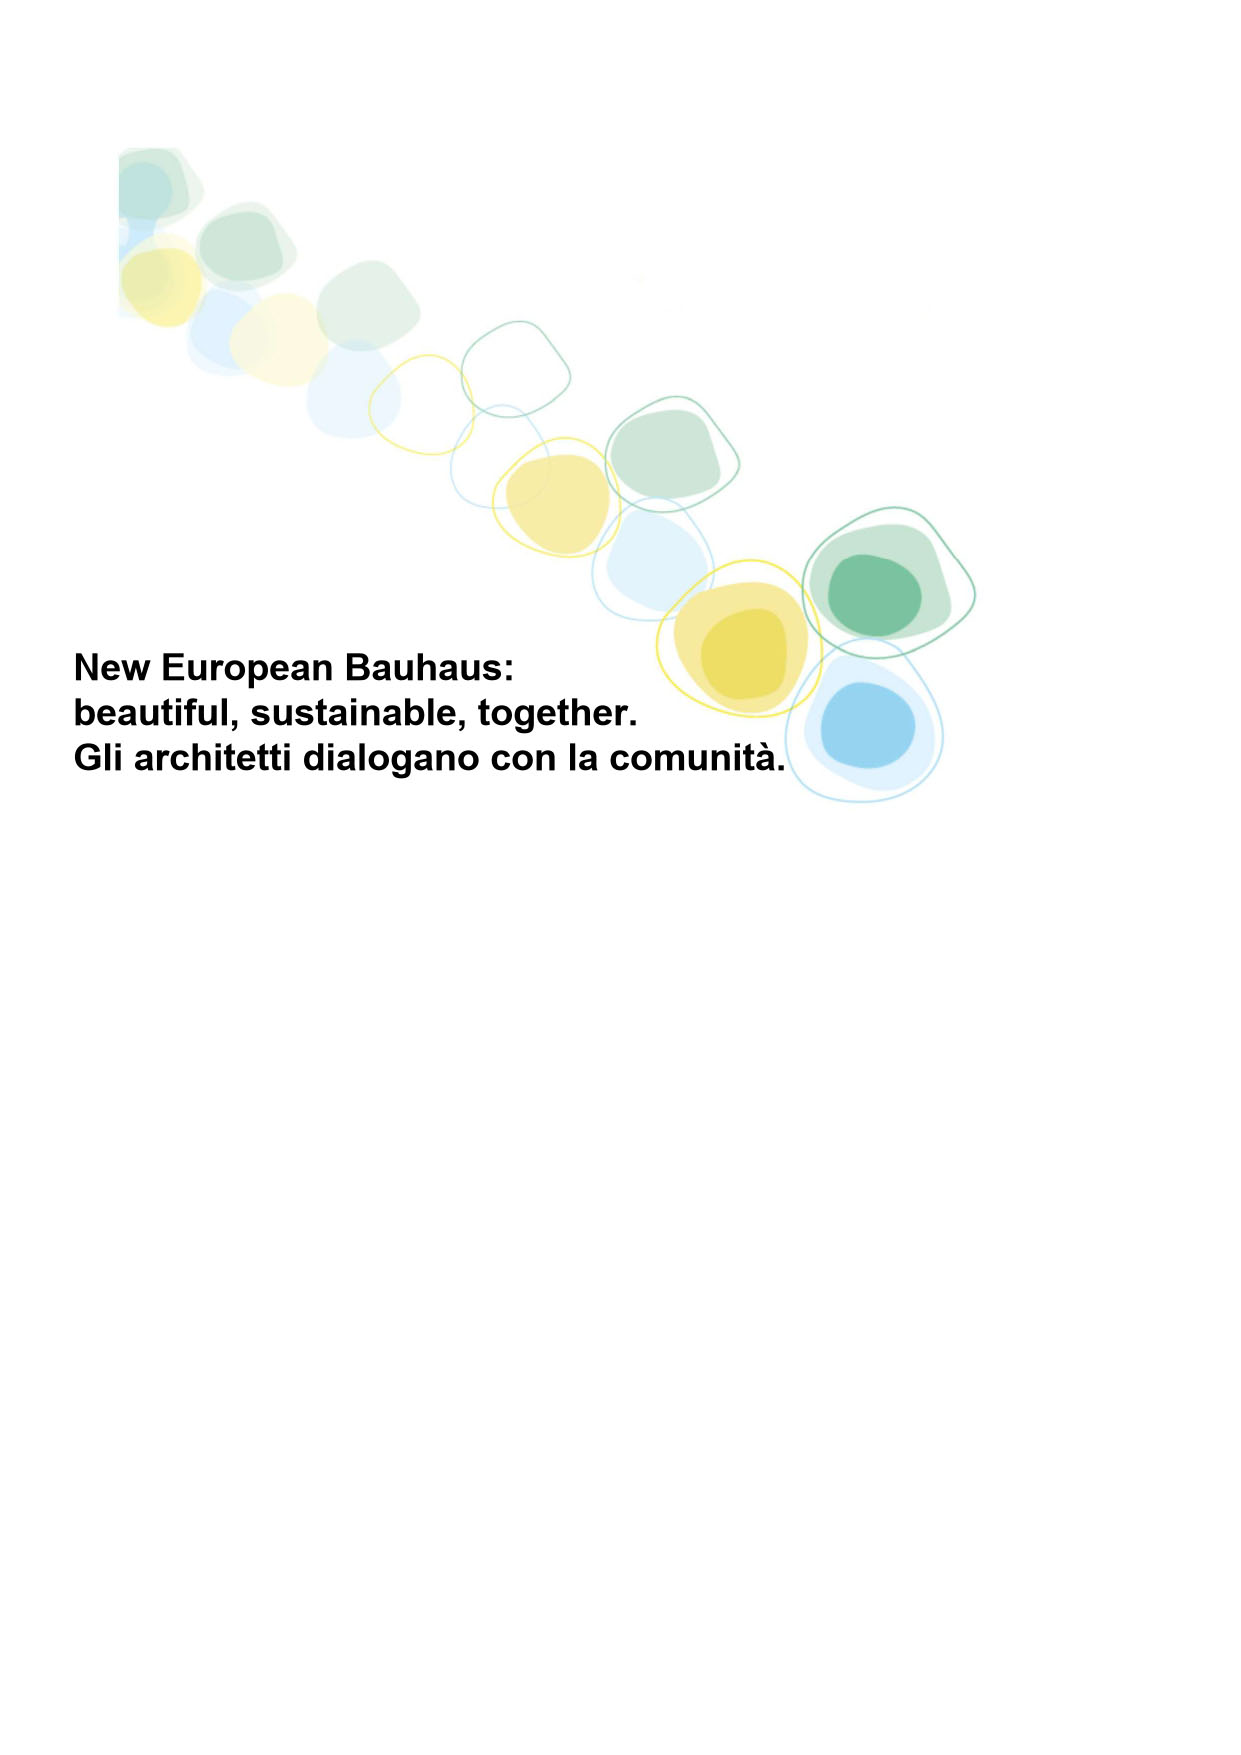 Logo New European Bauhaus